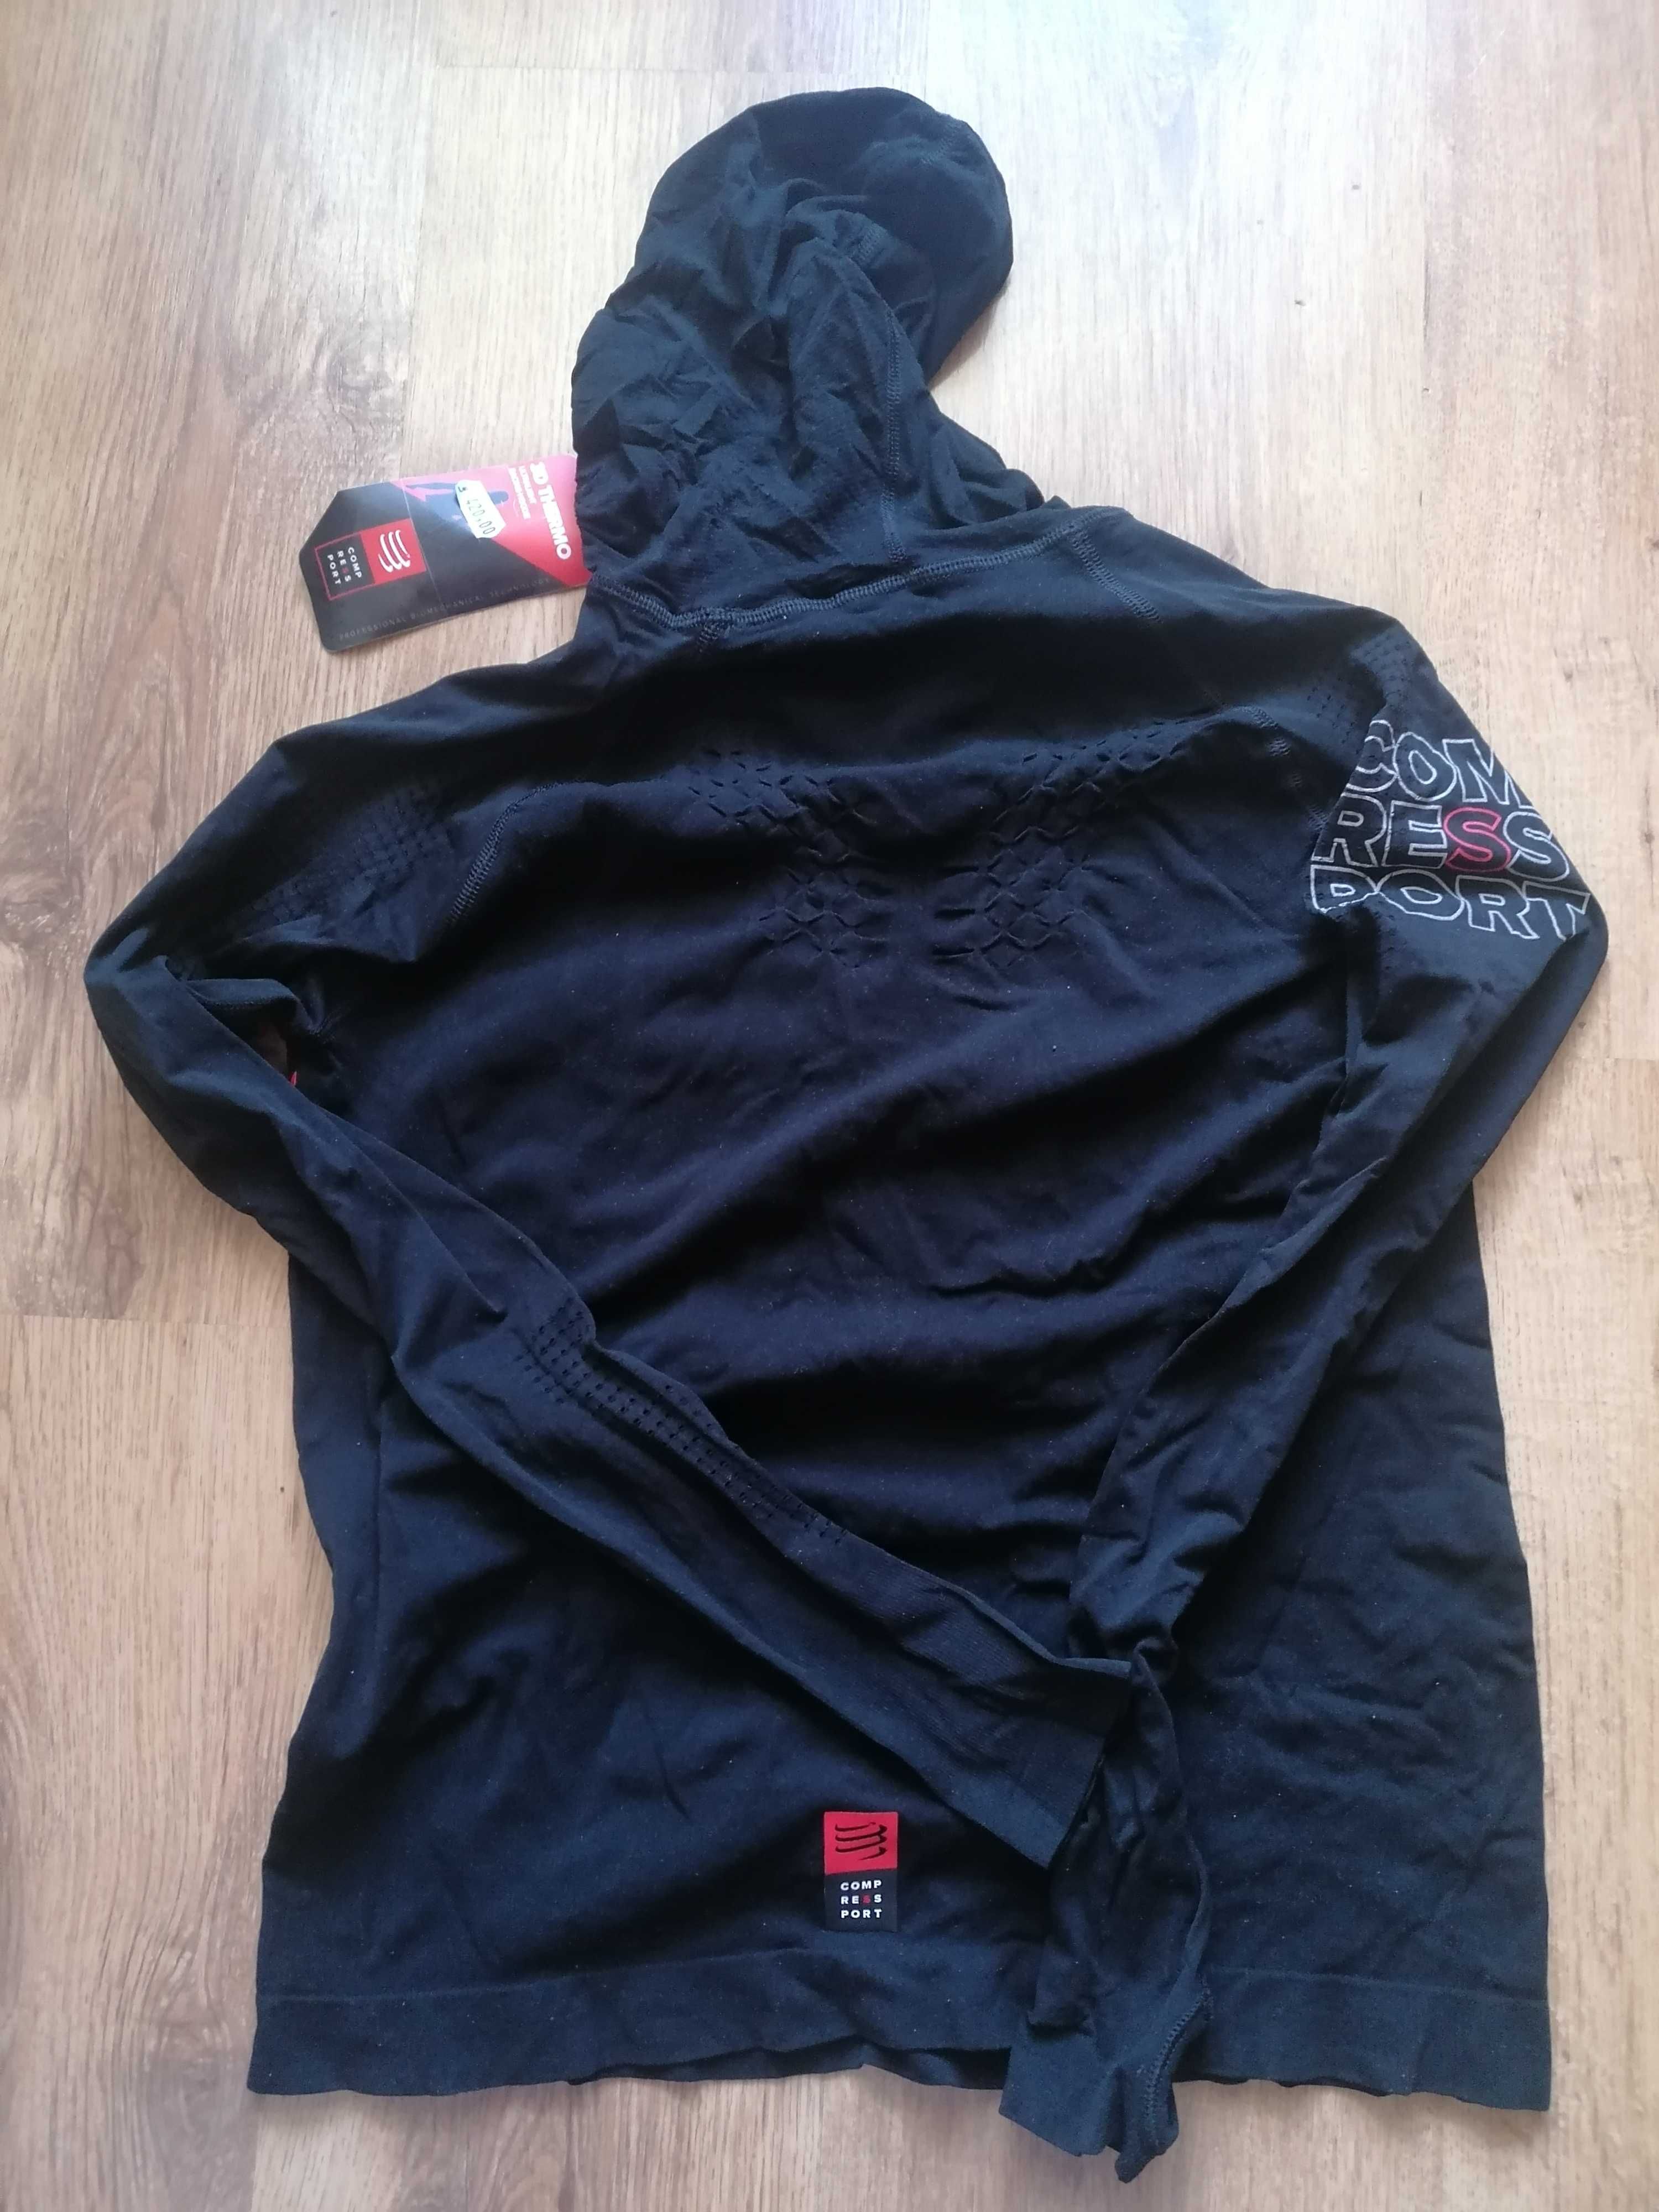 Bluza tricou hoodie Compressport nou eticheta alergare trail running